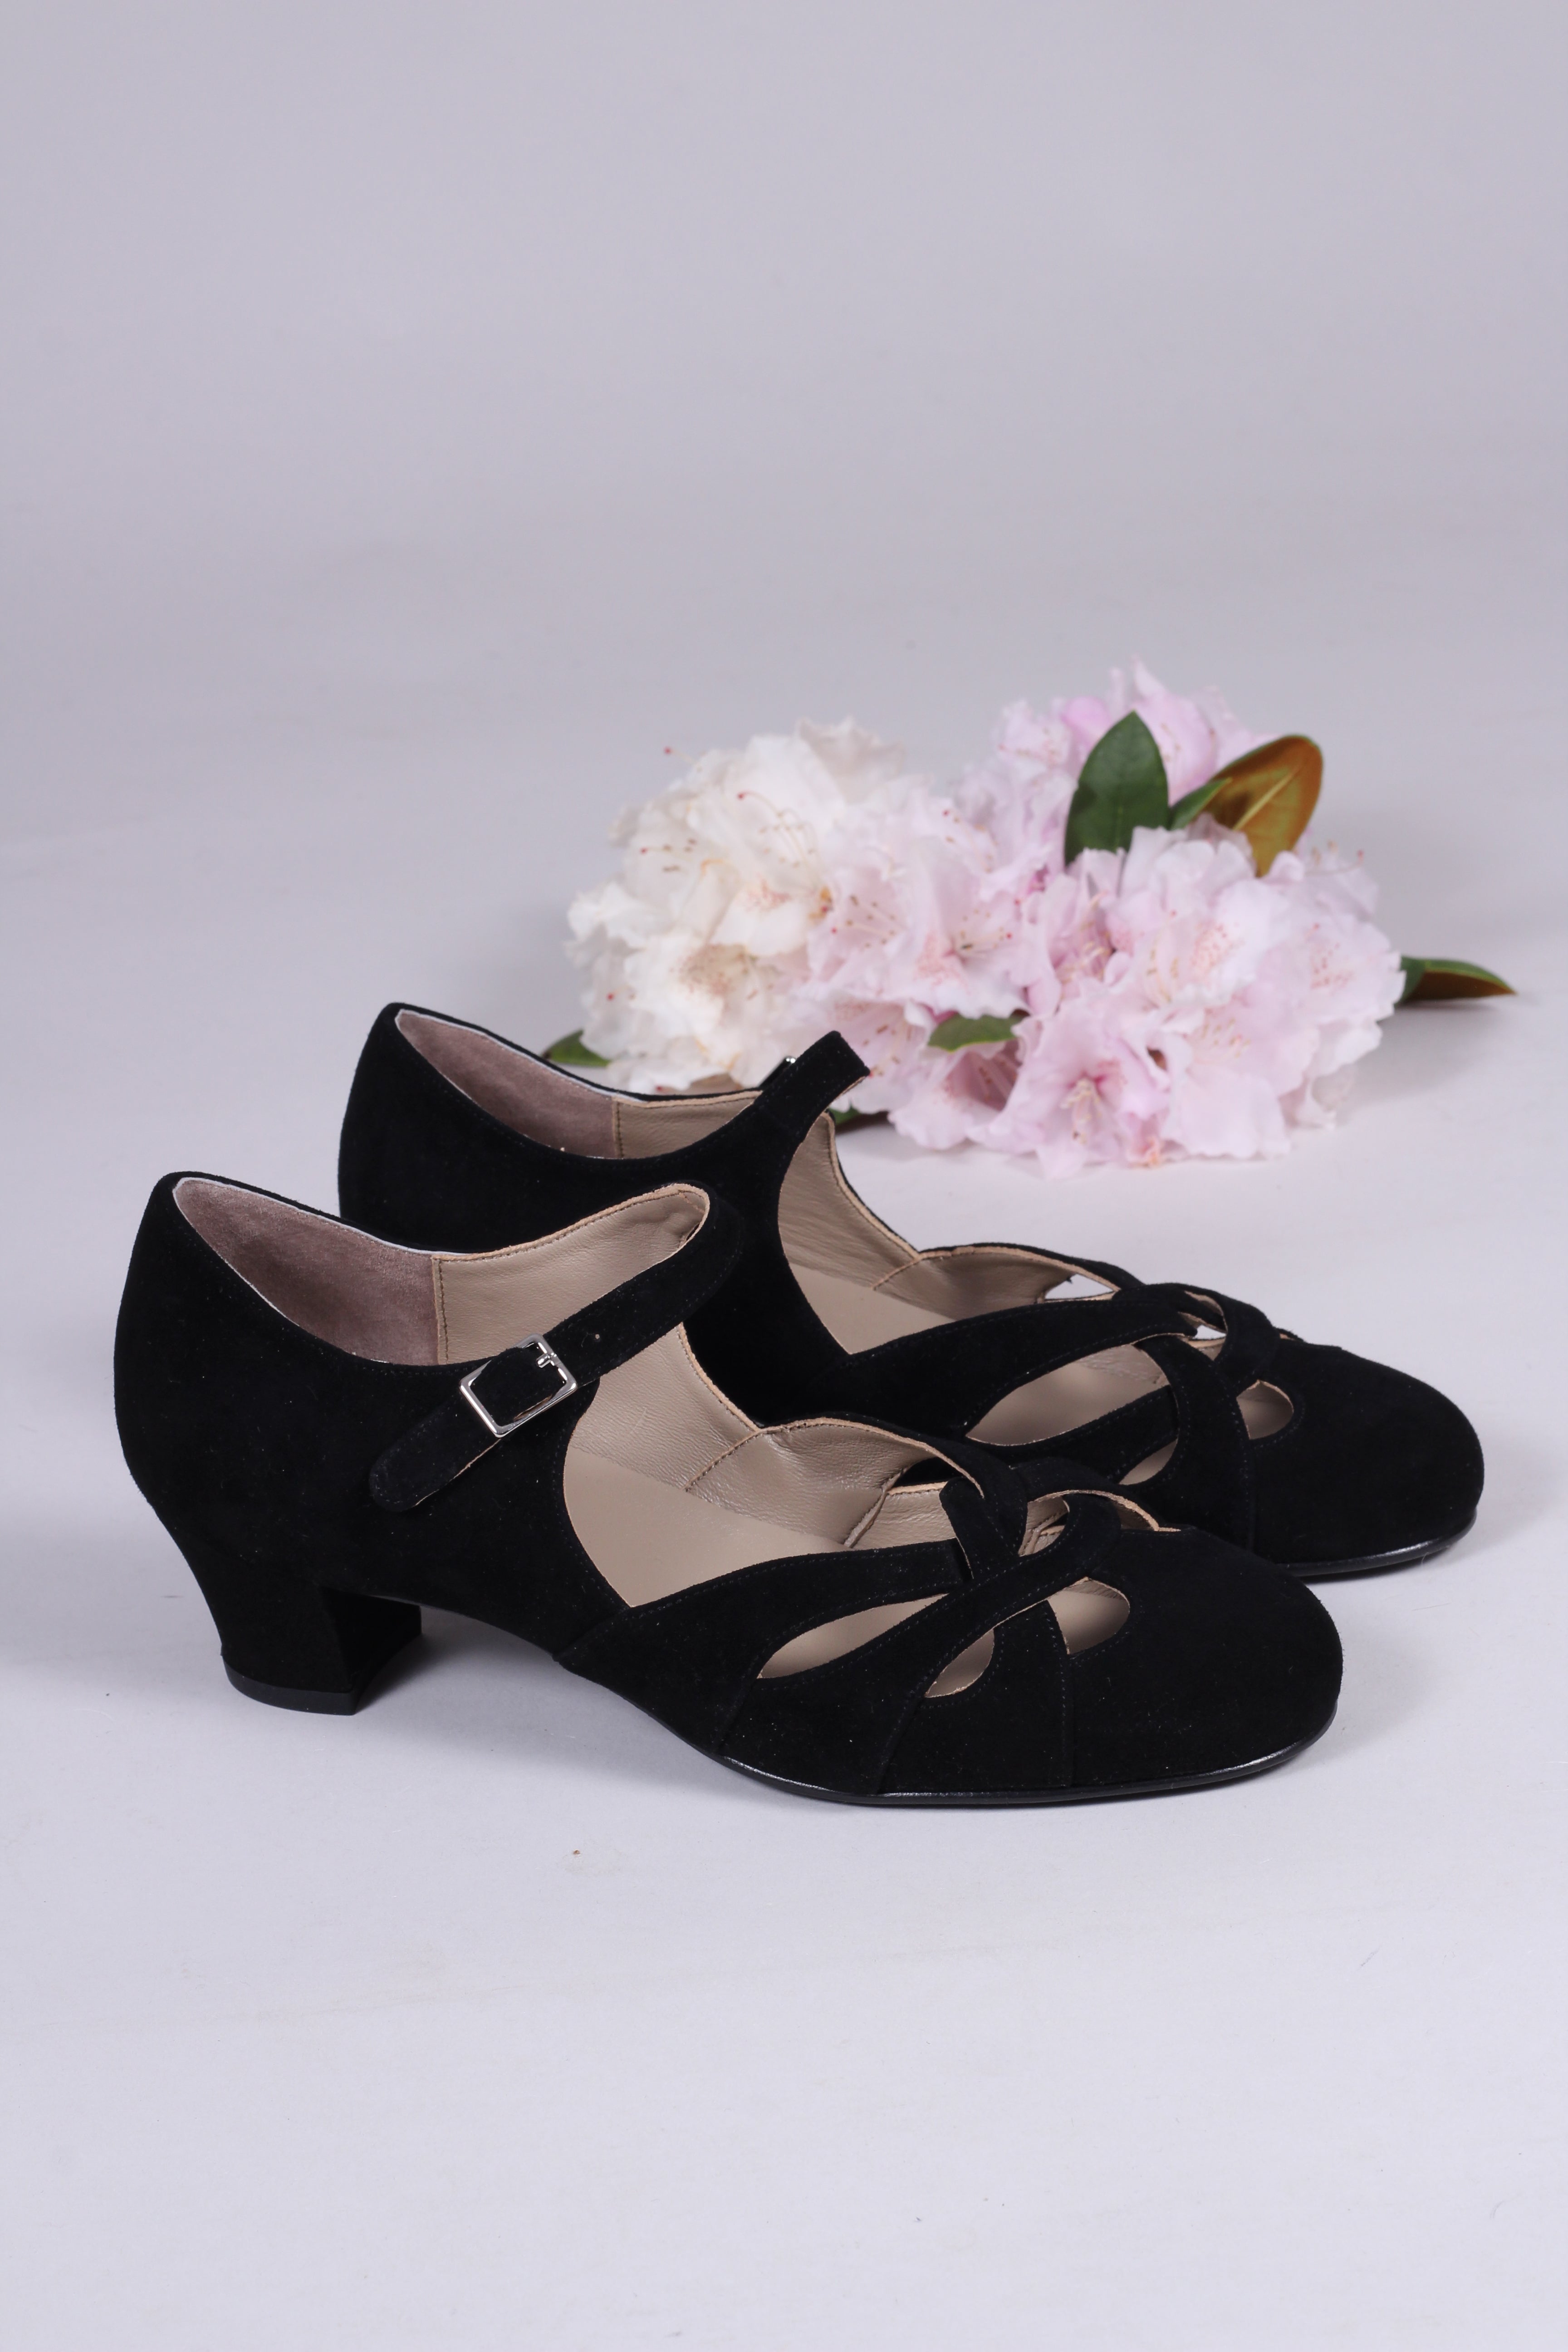 1930'er / 1940'er vintage style sandaler i - sort - Ida – Vintage